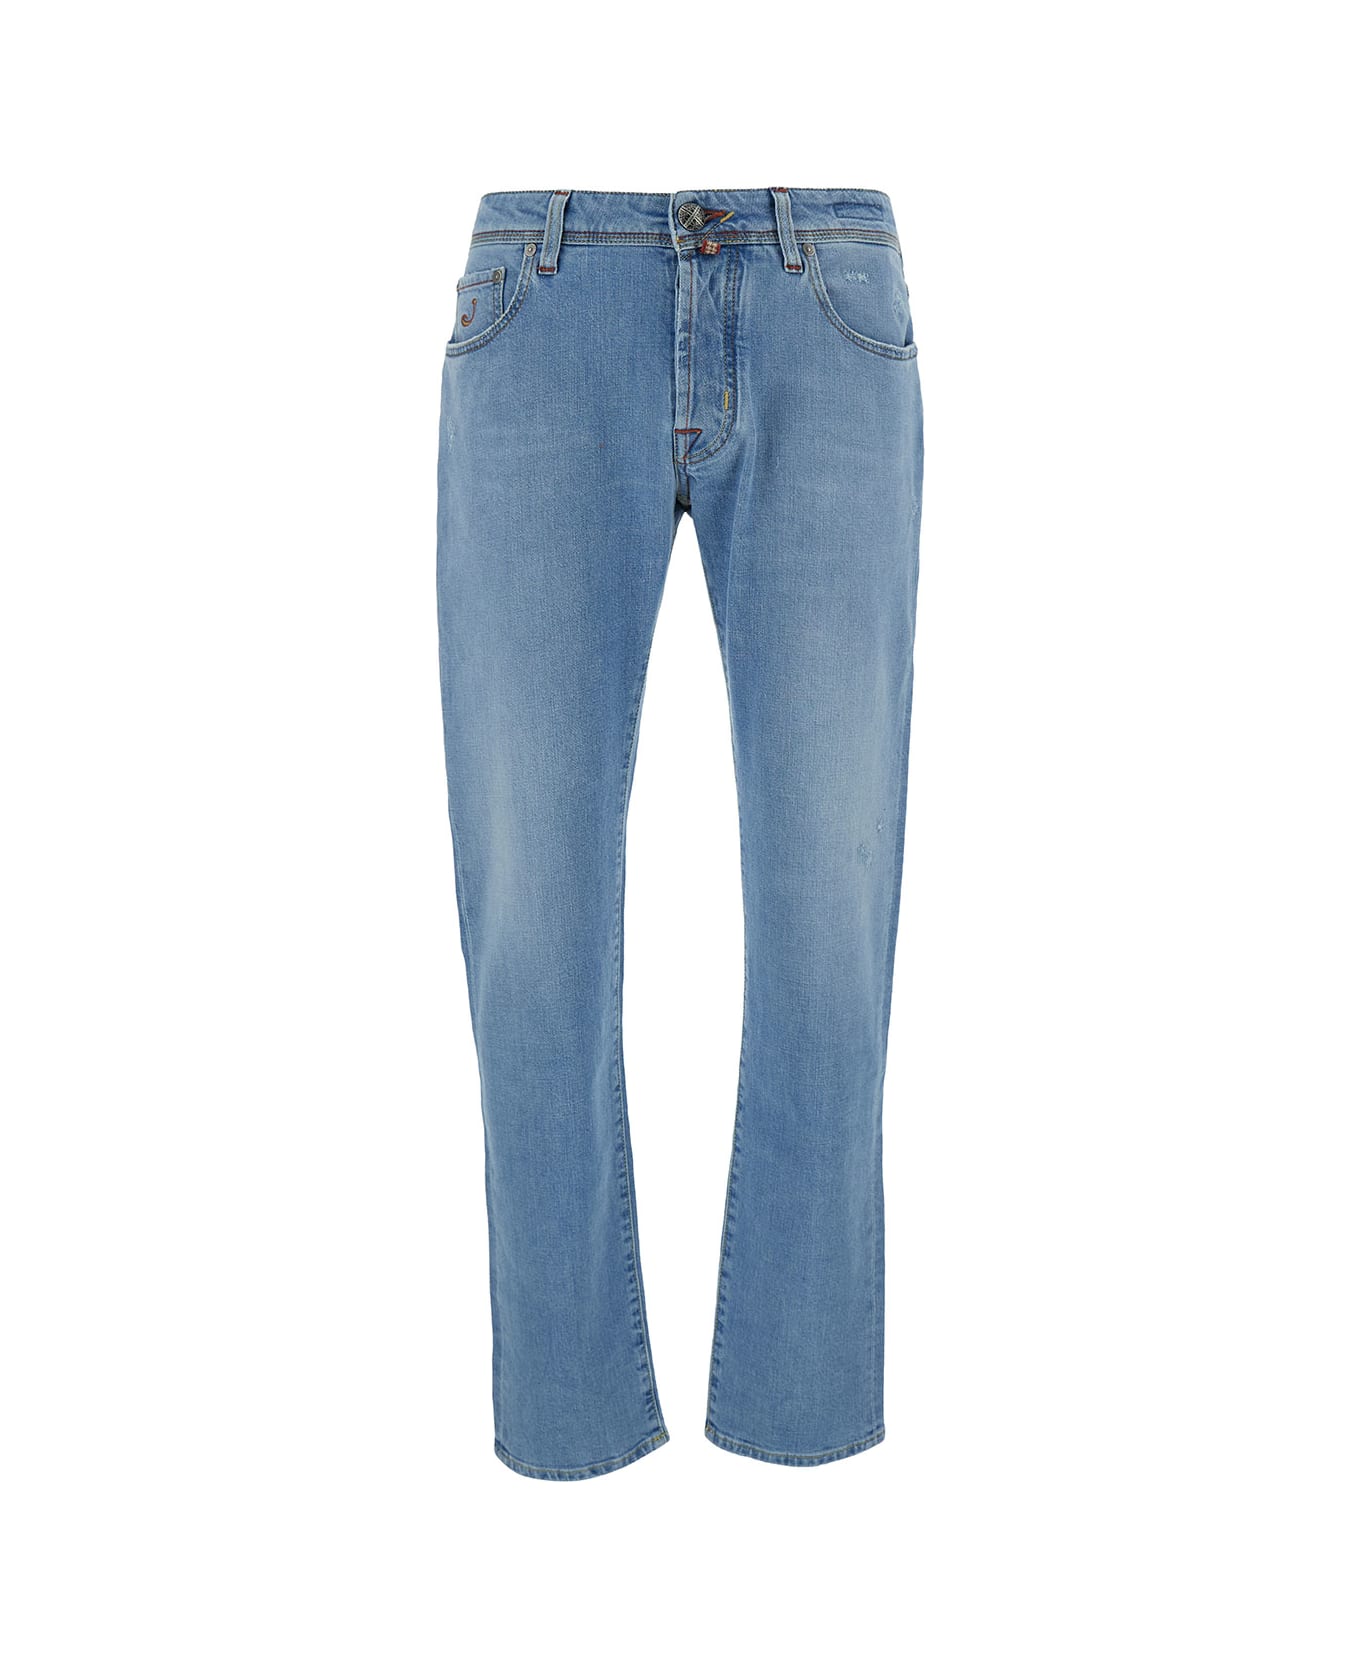 Jacob Cohen Light Blue Slim Jeans In Cotton Man - Light blue